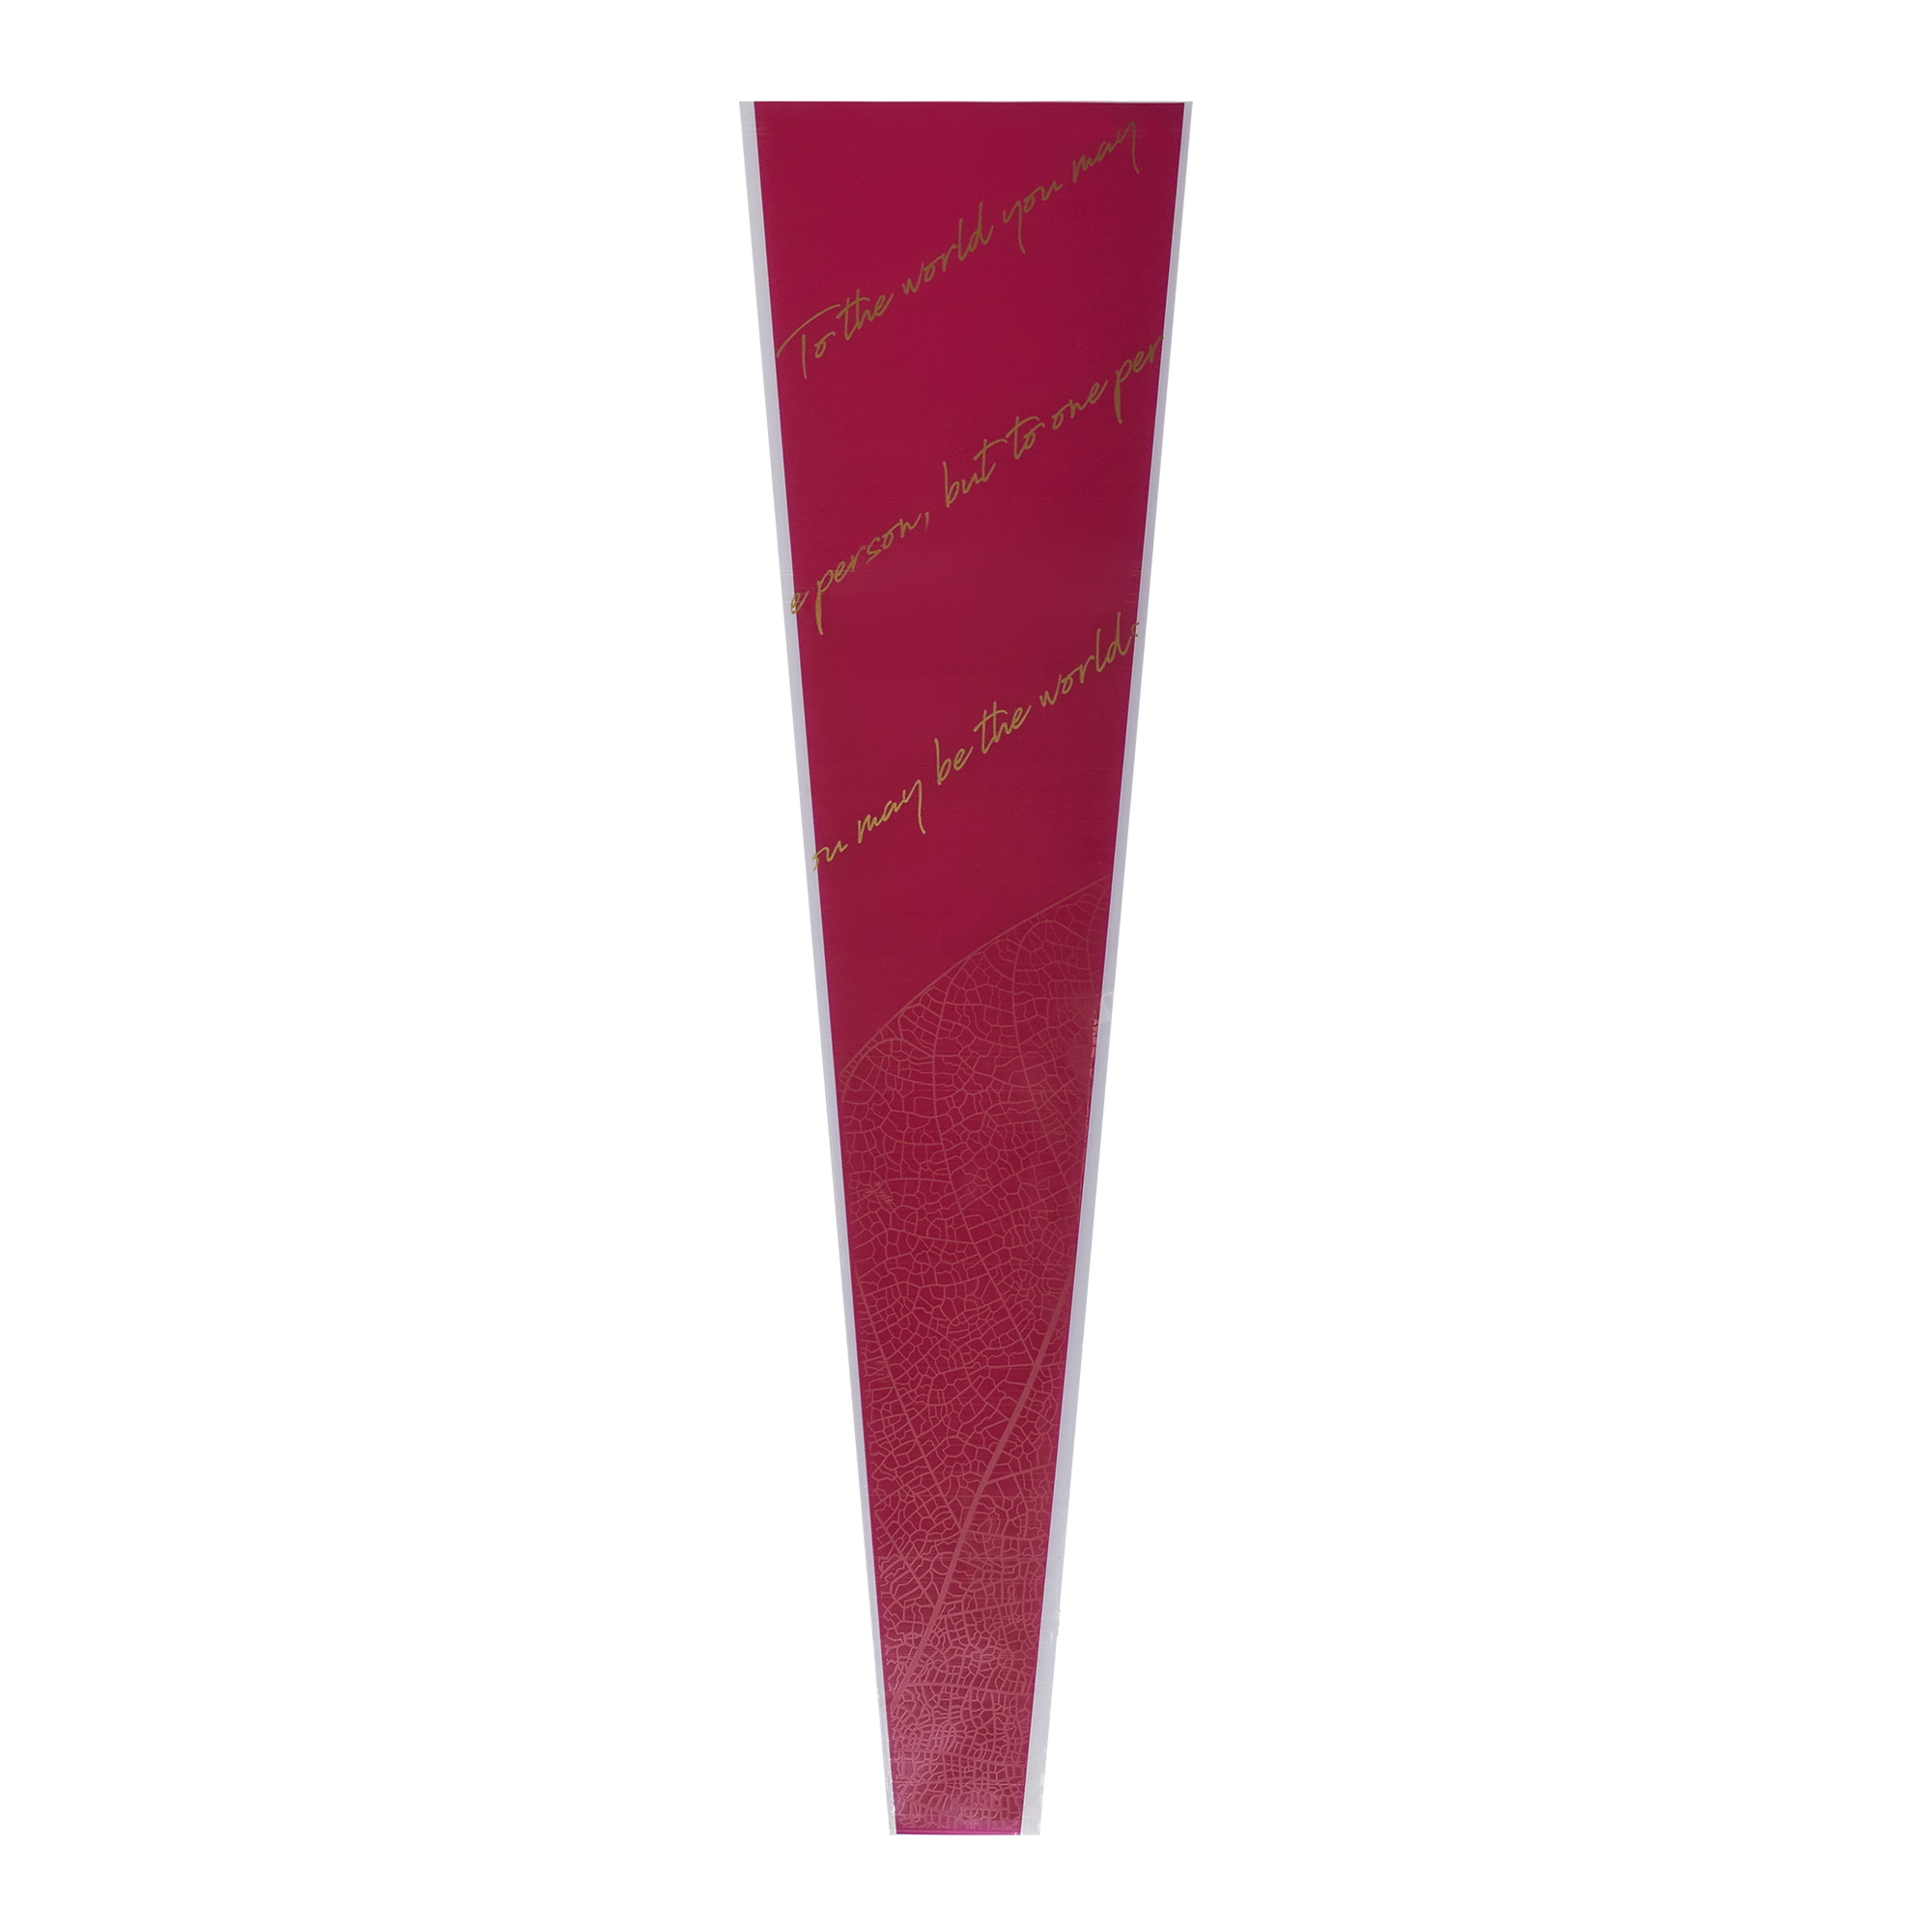 Пакет-конус для цветов "Строчки" 45cmx12,5cmx4cm,  50шт/уп, цв. Красный, 4640171724211